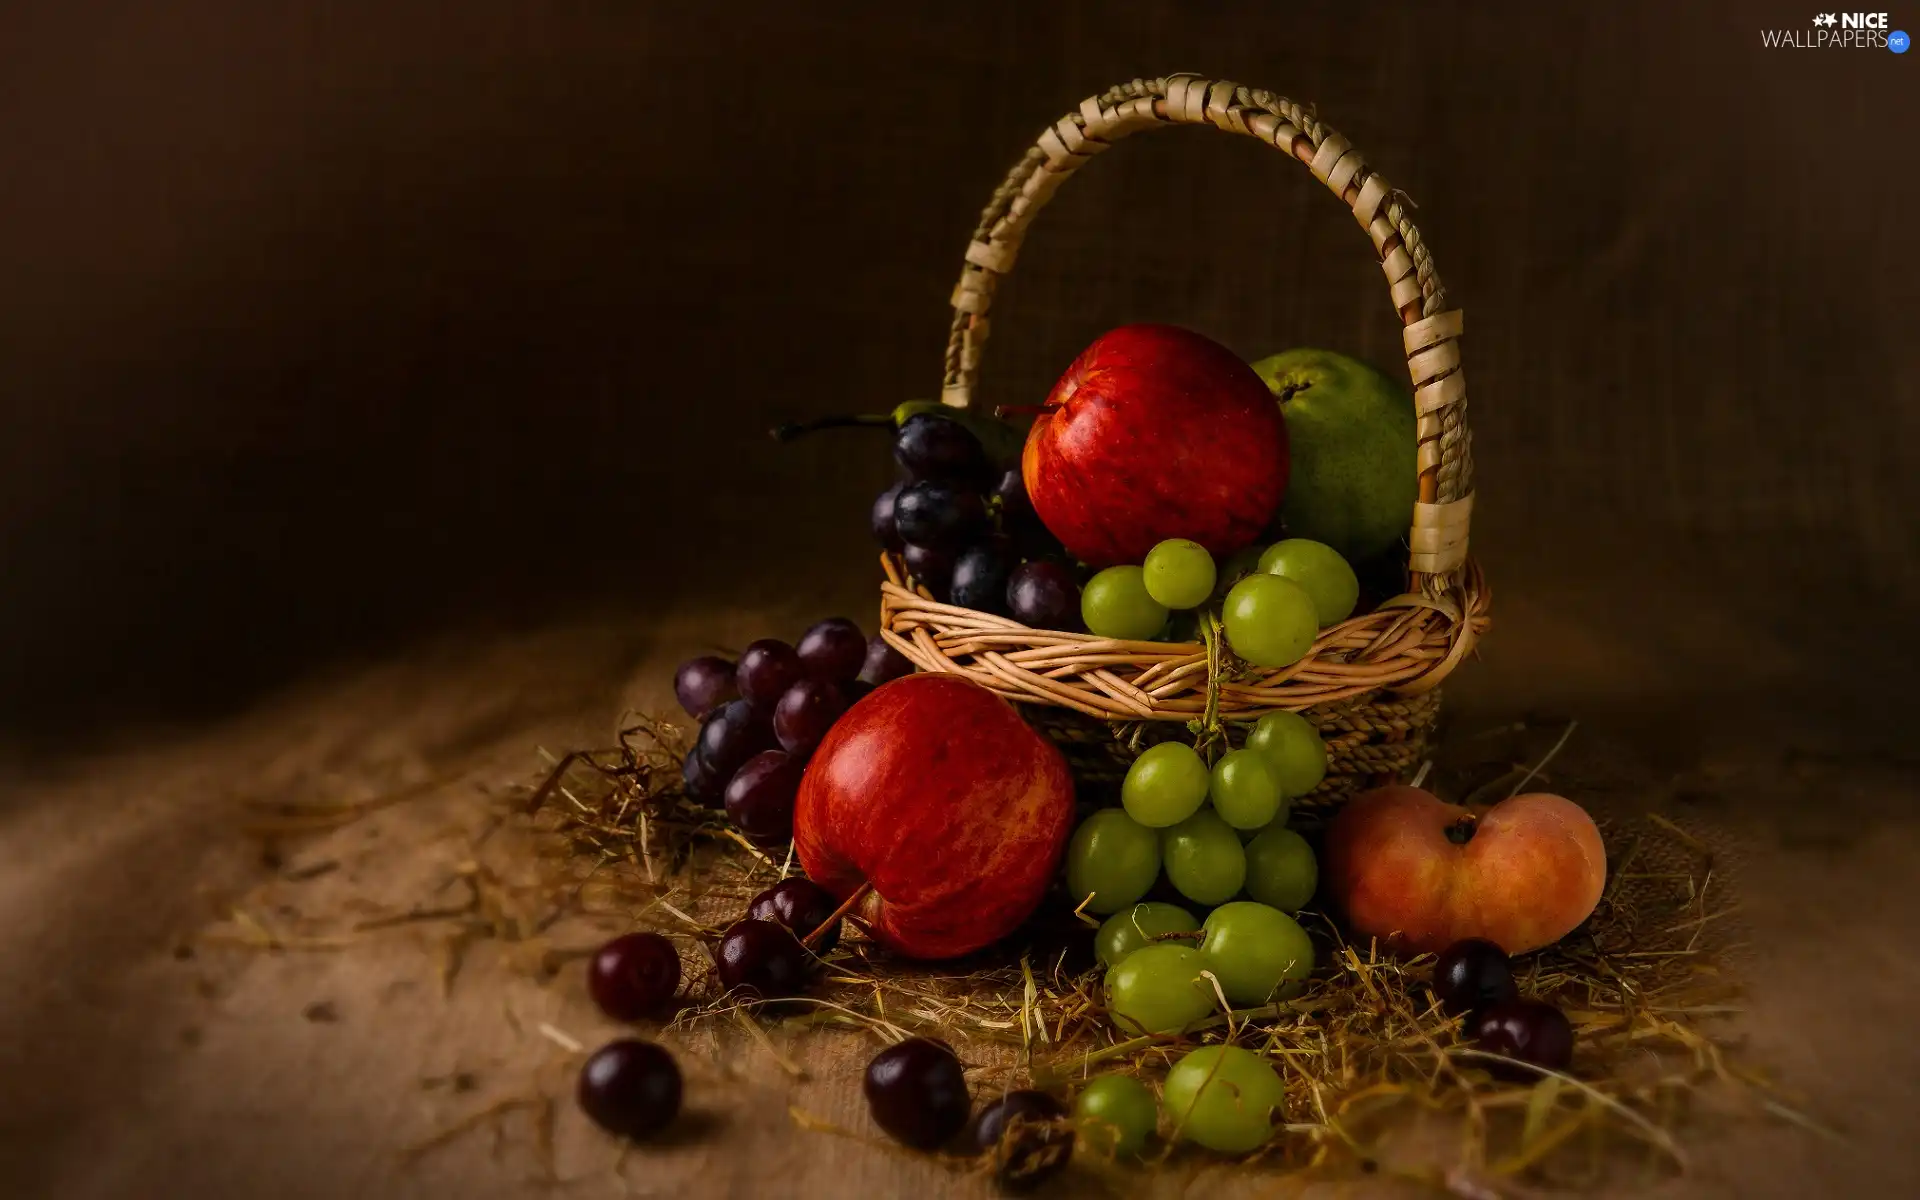 Grapes, basket, peach, Truck concrete mixer, apples, Fruits